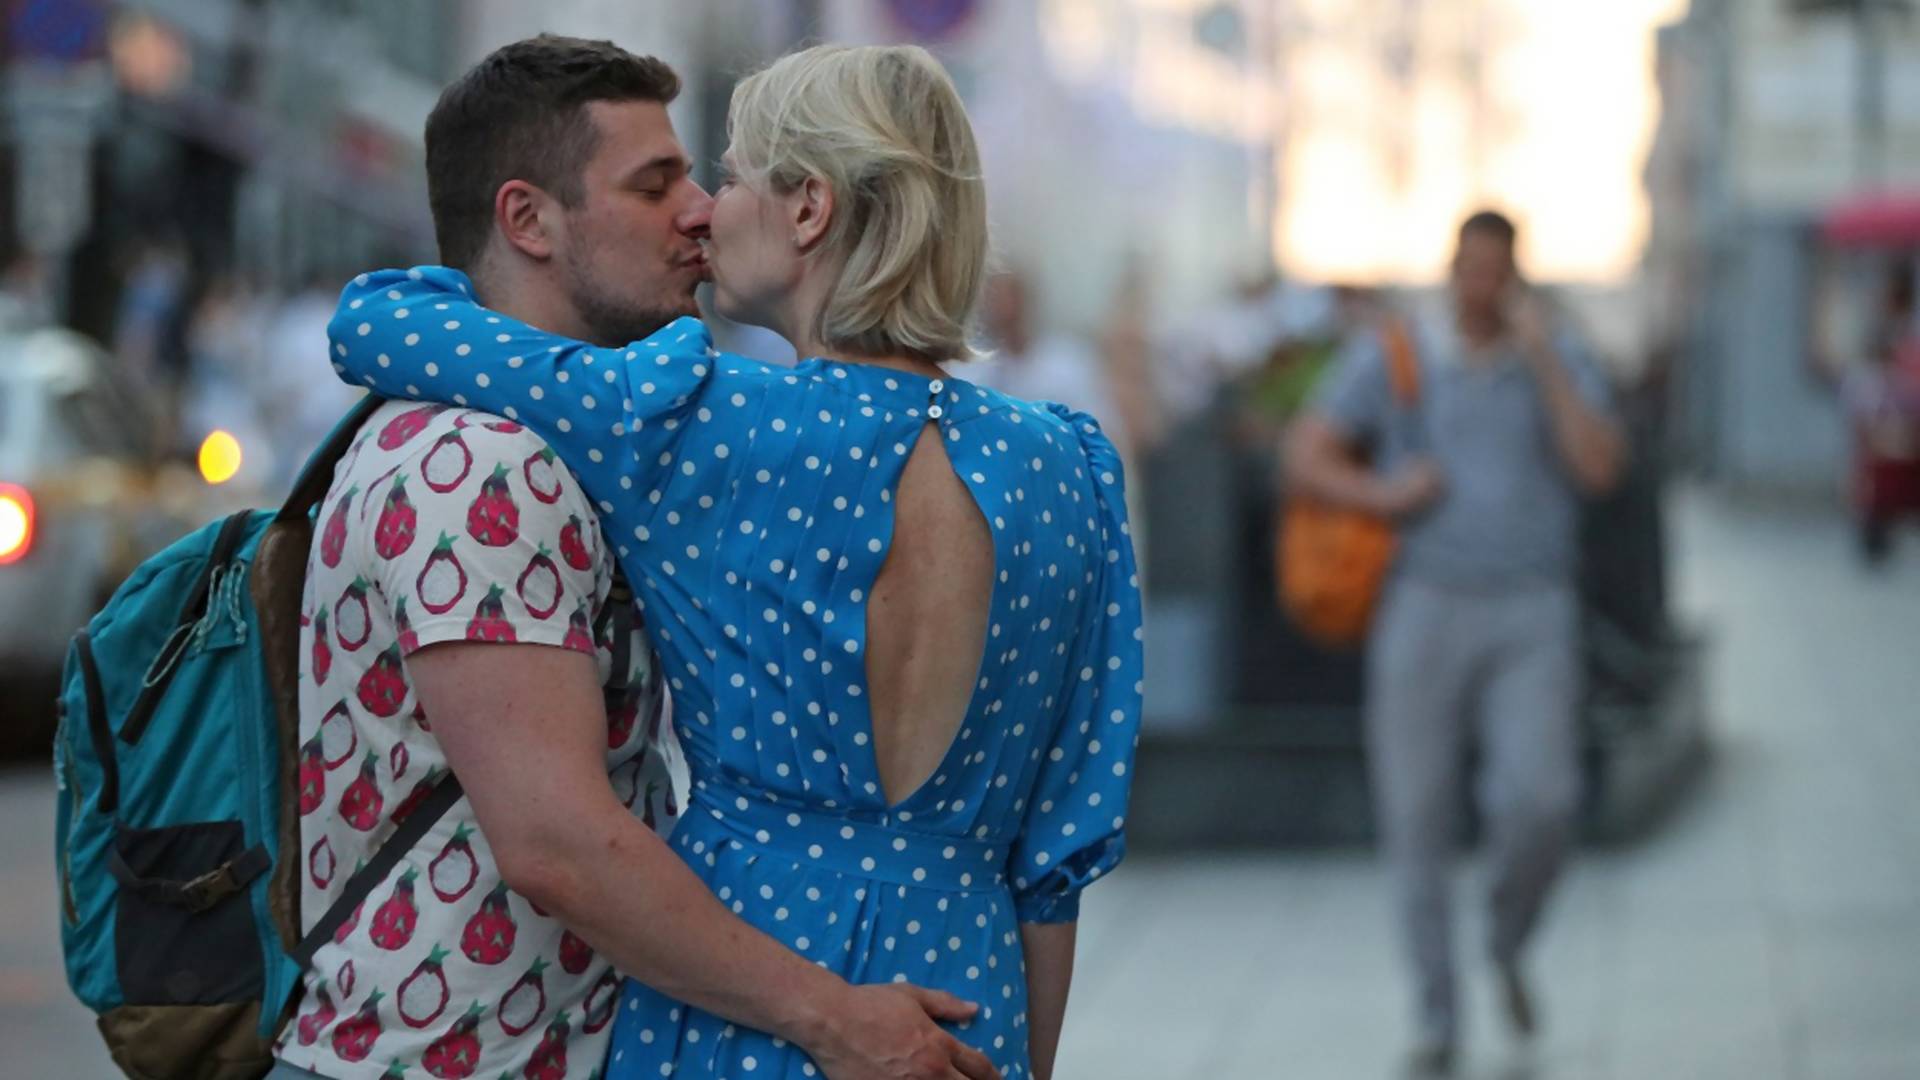 Poljubio devojku na ulici u Prištini sad mora da plati kaznu od 450 evra